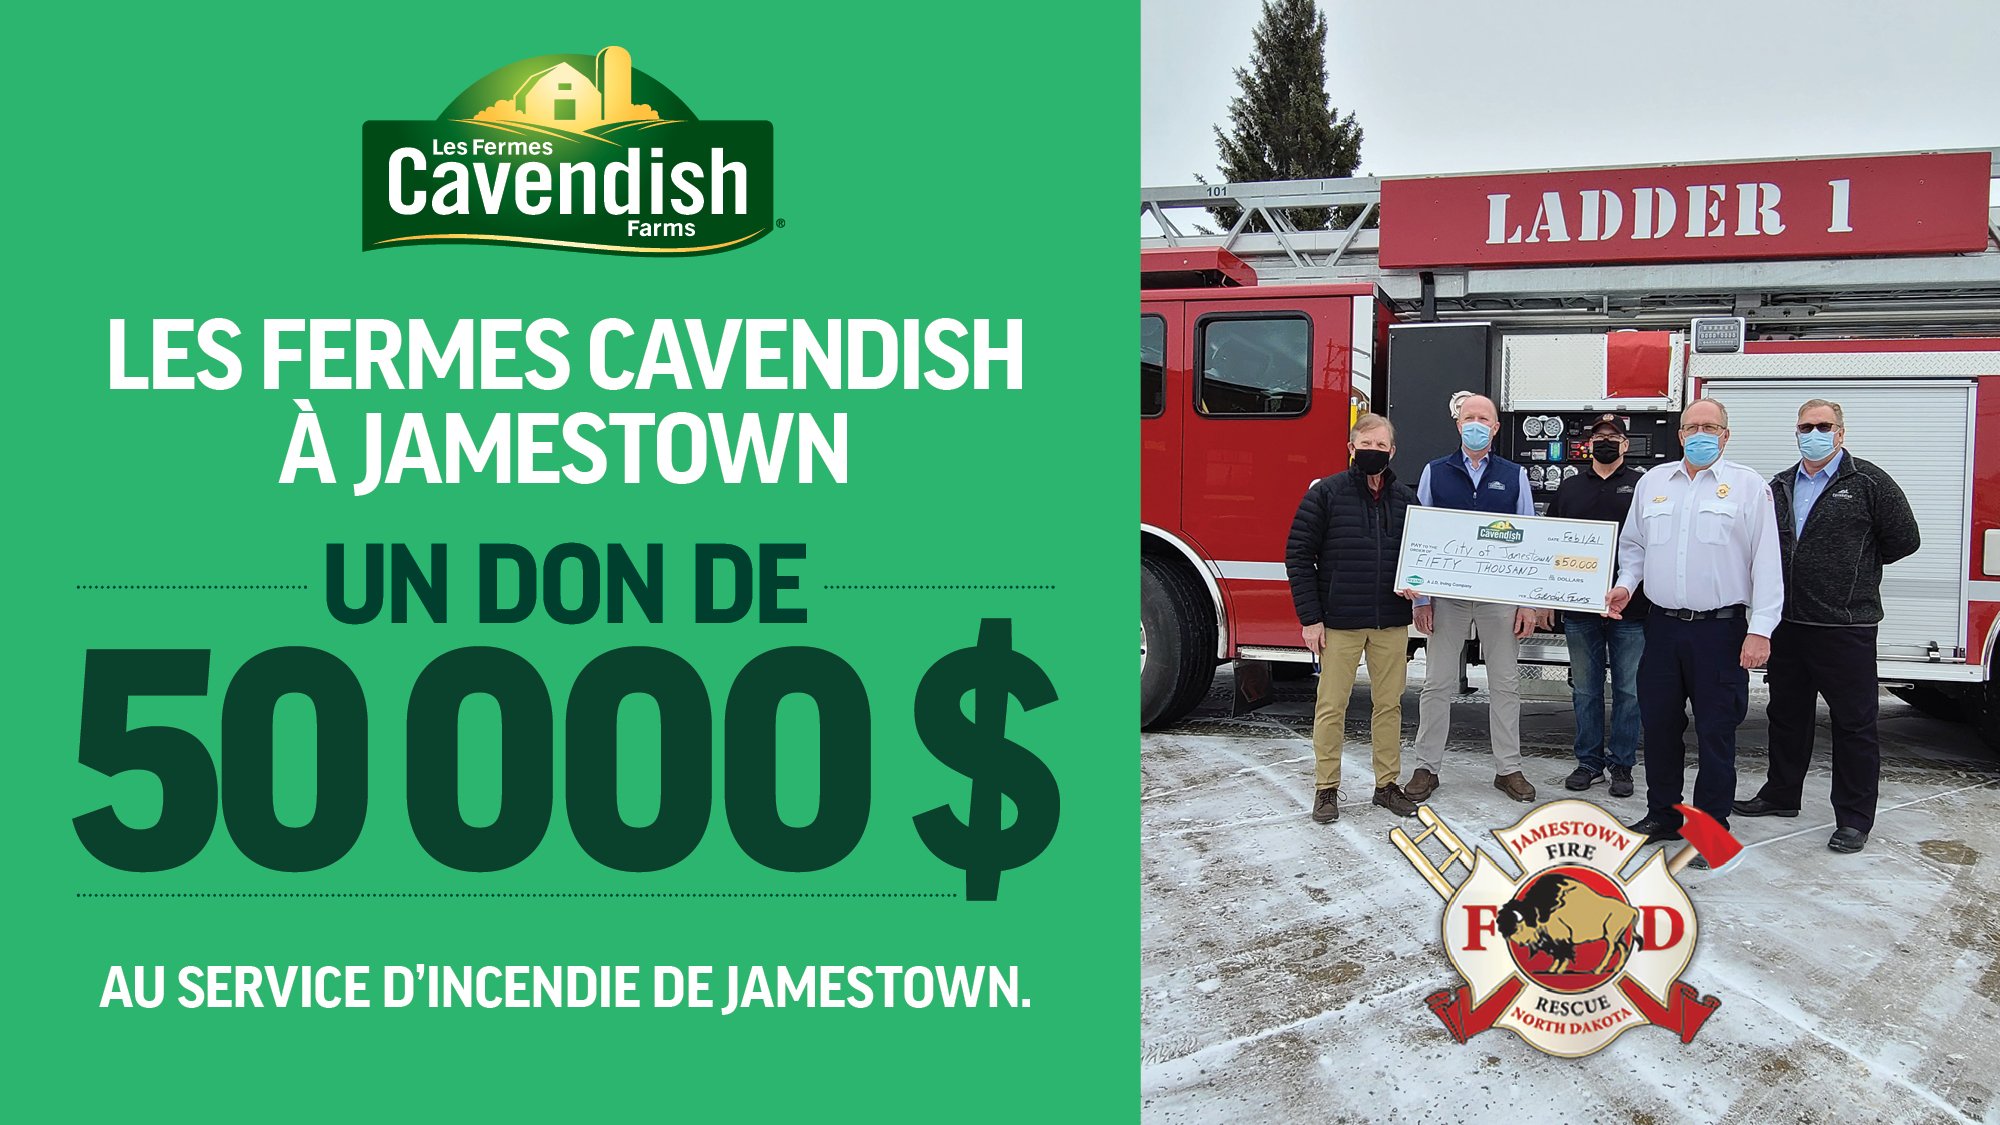 Les Fermes Cavendish appuient le service d'incendie de Jamestown grâce à un don de 50 000 $ pour aider à compenser une partie du coût de la nouvelle auto-échelle.